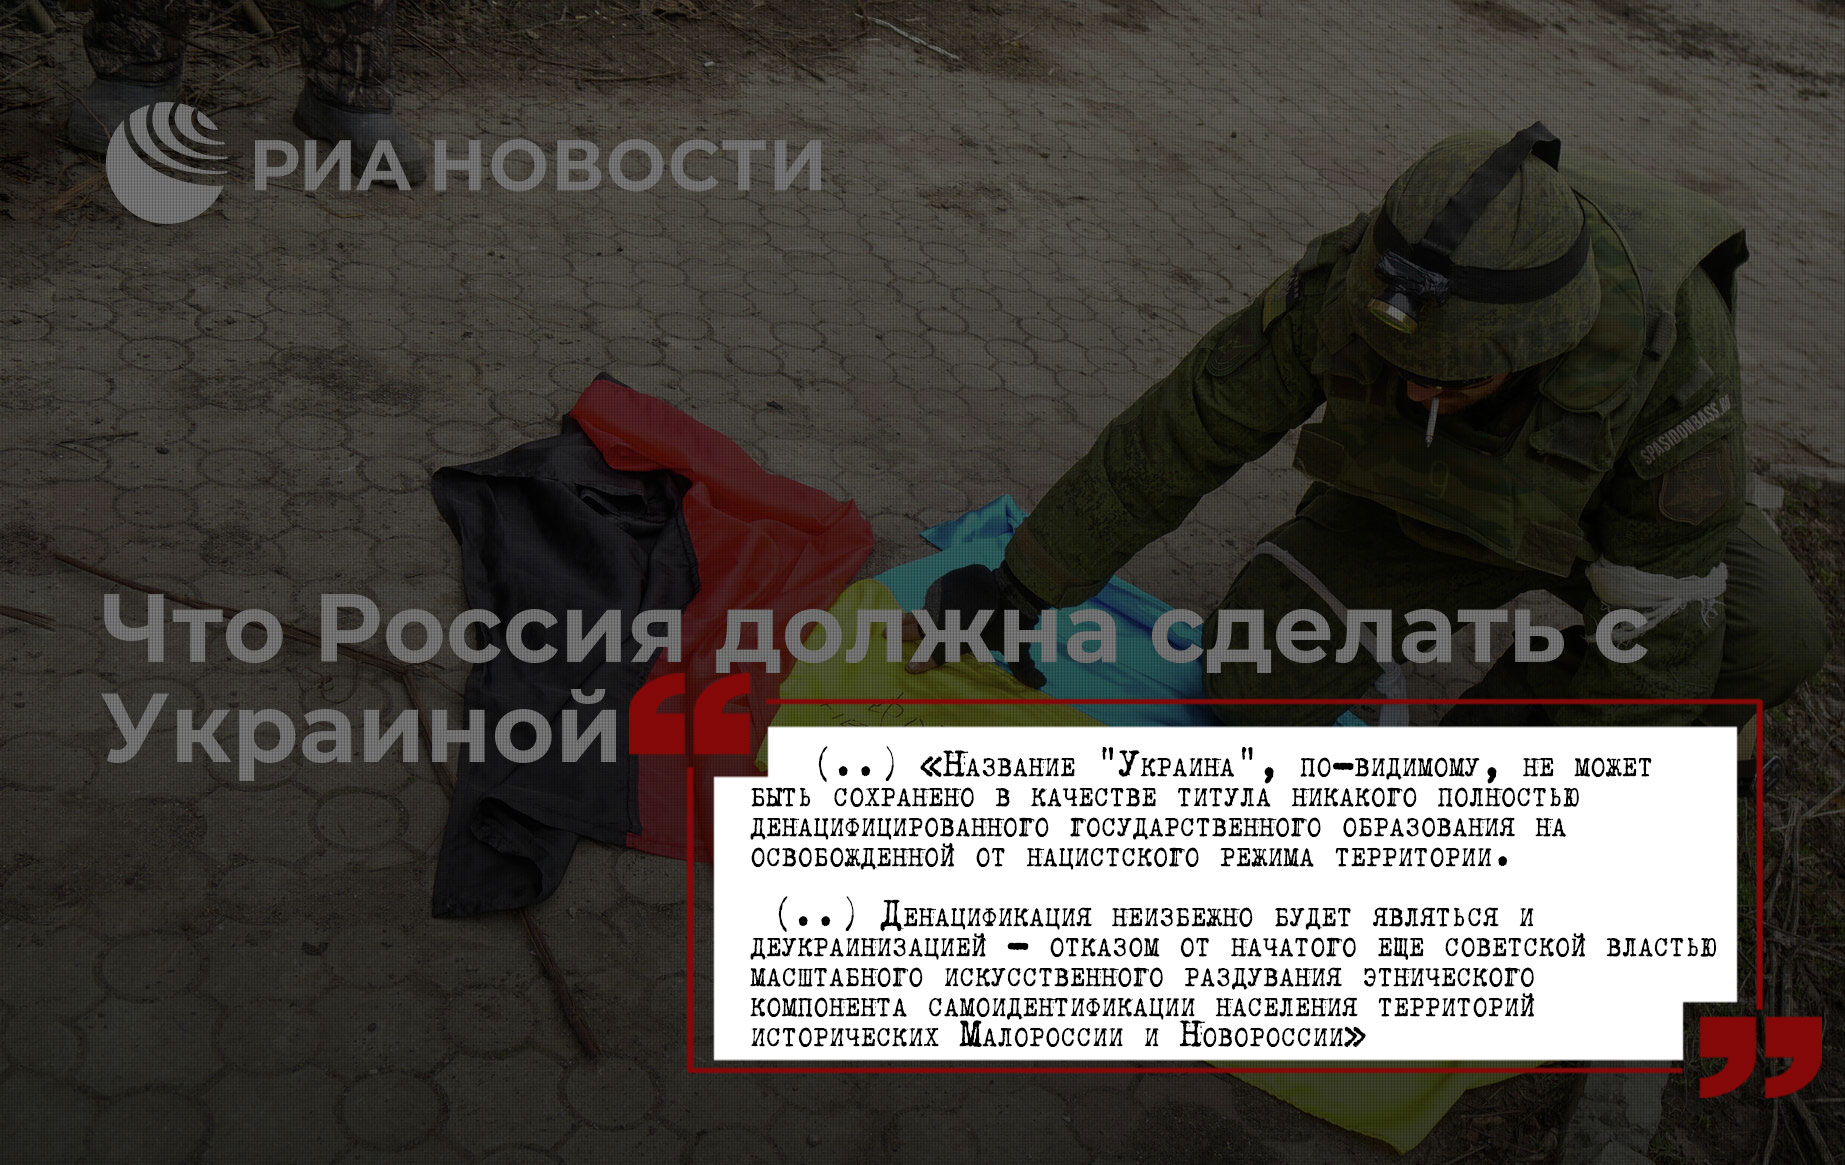 Пропаганьба #1: Разбираем статью РИА-Новости «Что Россия должна сделать с Украиной»